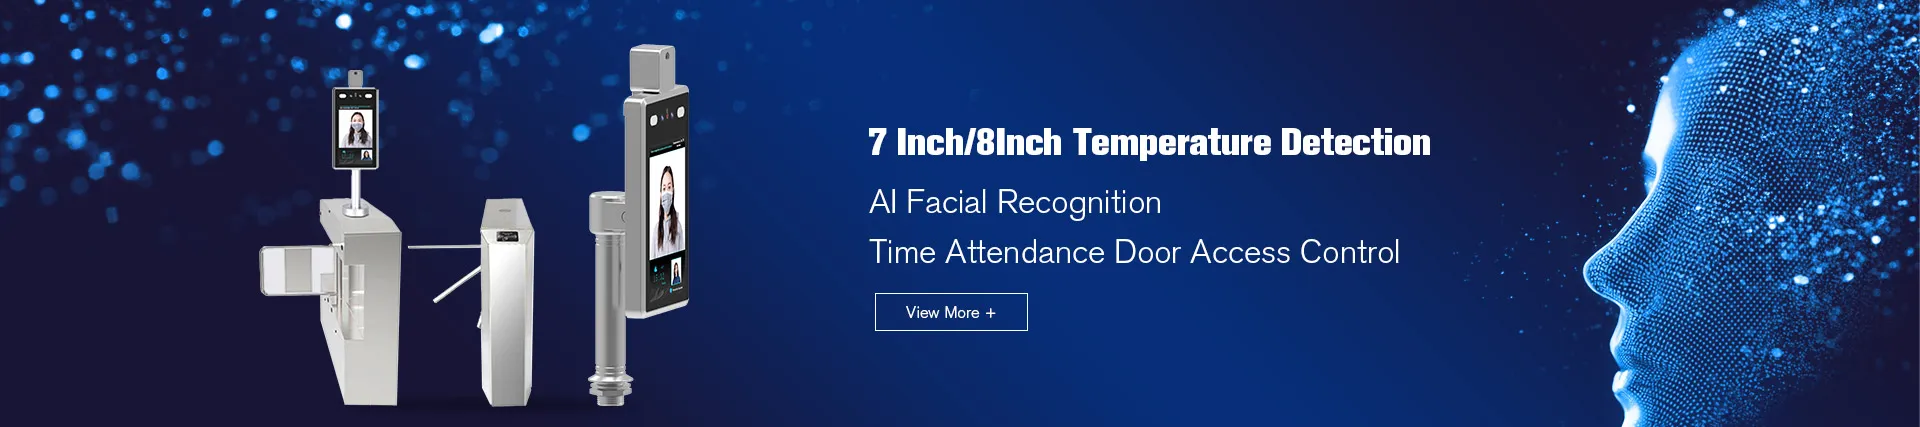 Dispositif de reconnaissance faciale AI à détection de température